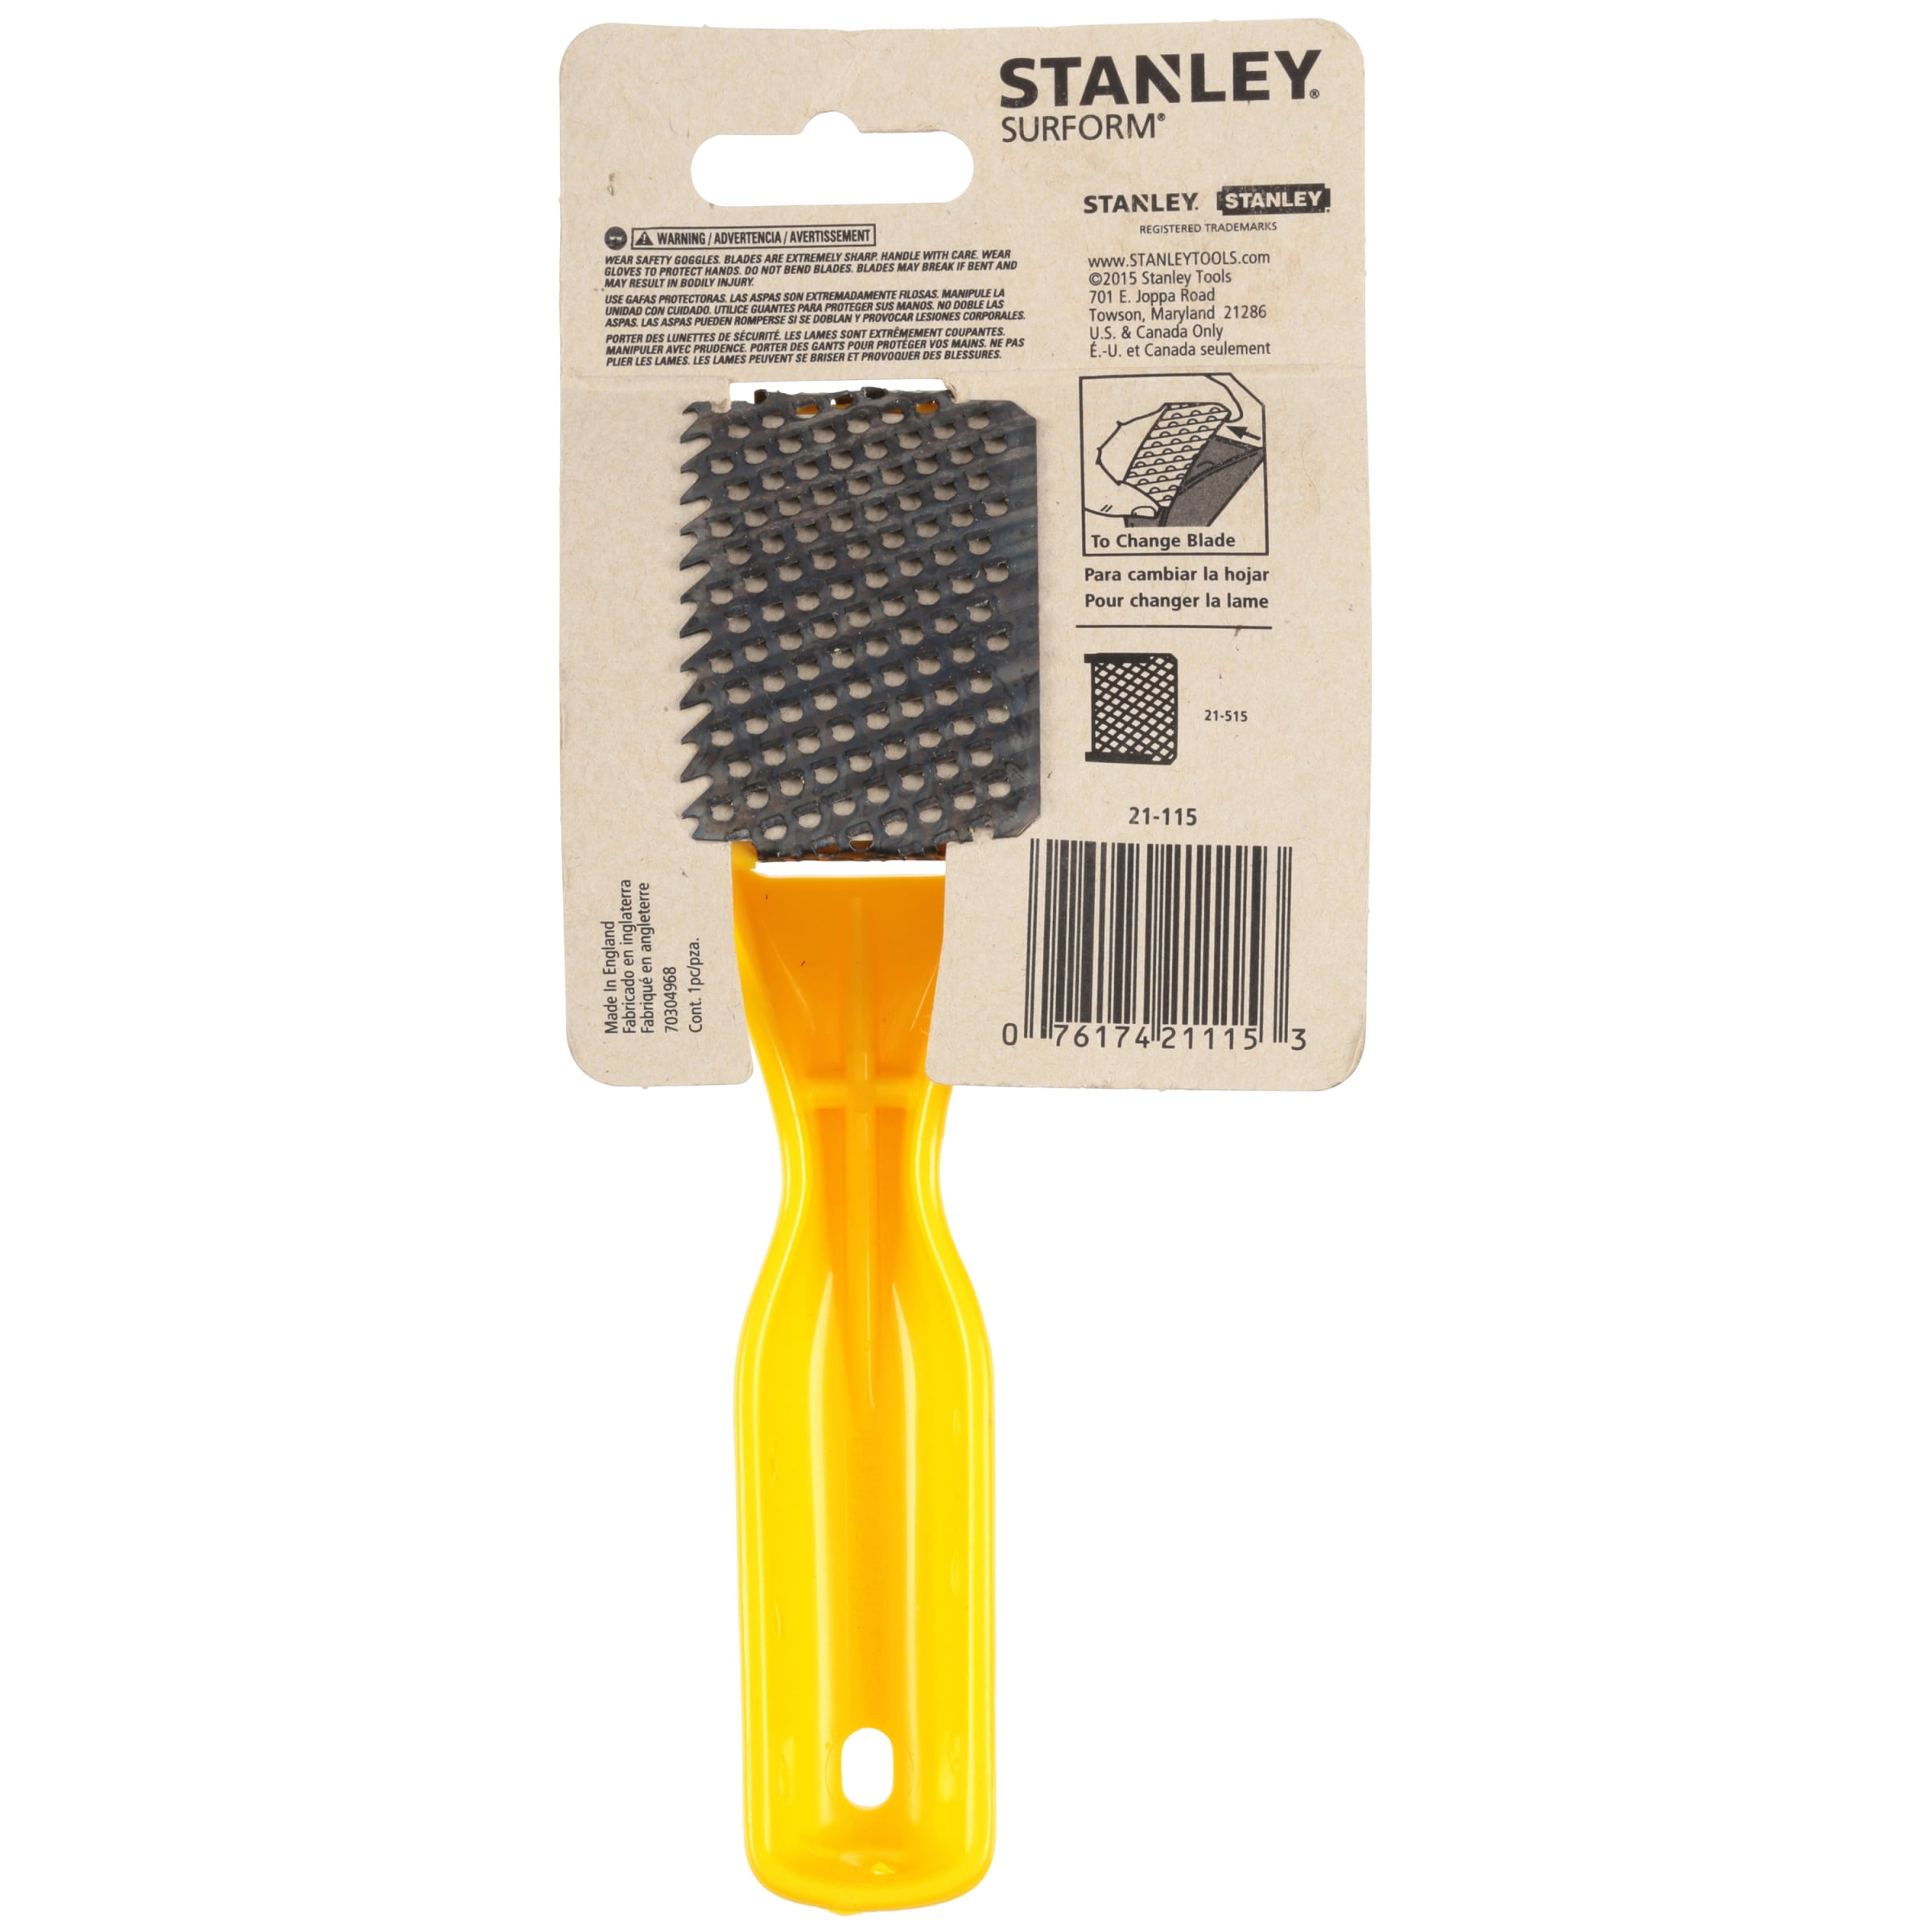 Stanley 5-21-115 Plastic Moulded Body Surform Shaver Tool 